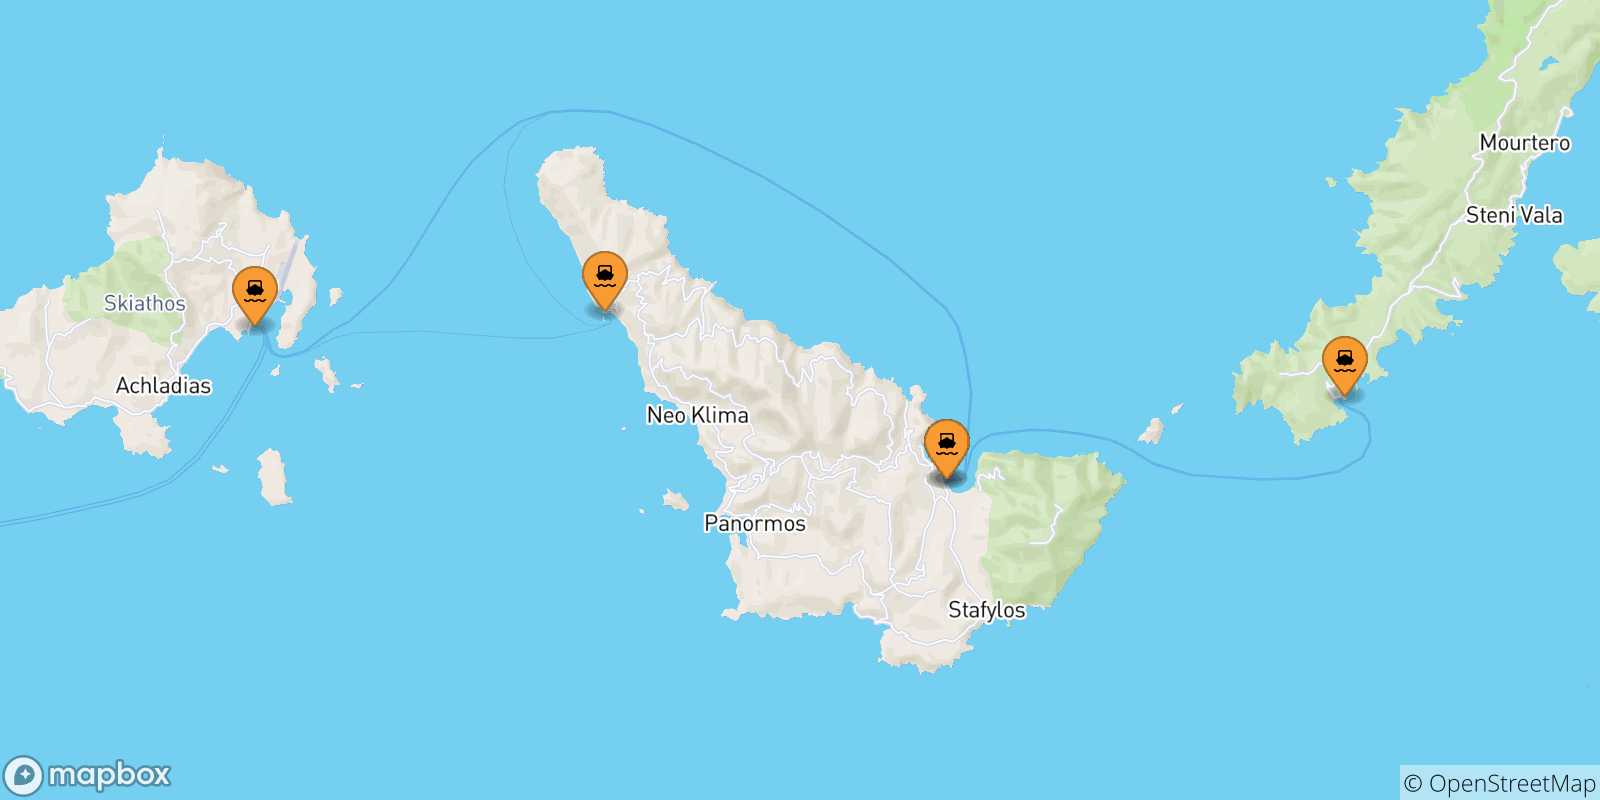 Mappa delle possibili rotte tra le Isole Sporadi e Skiathos